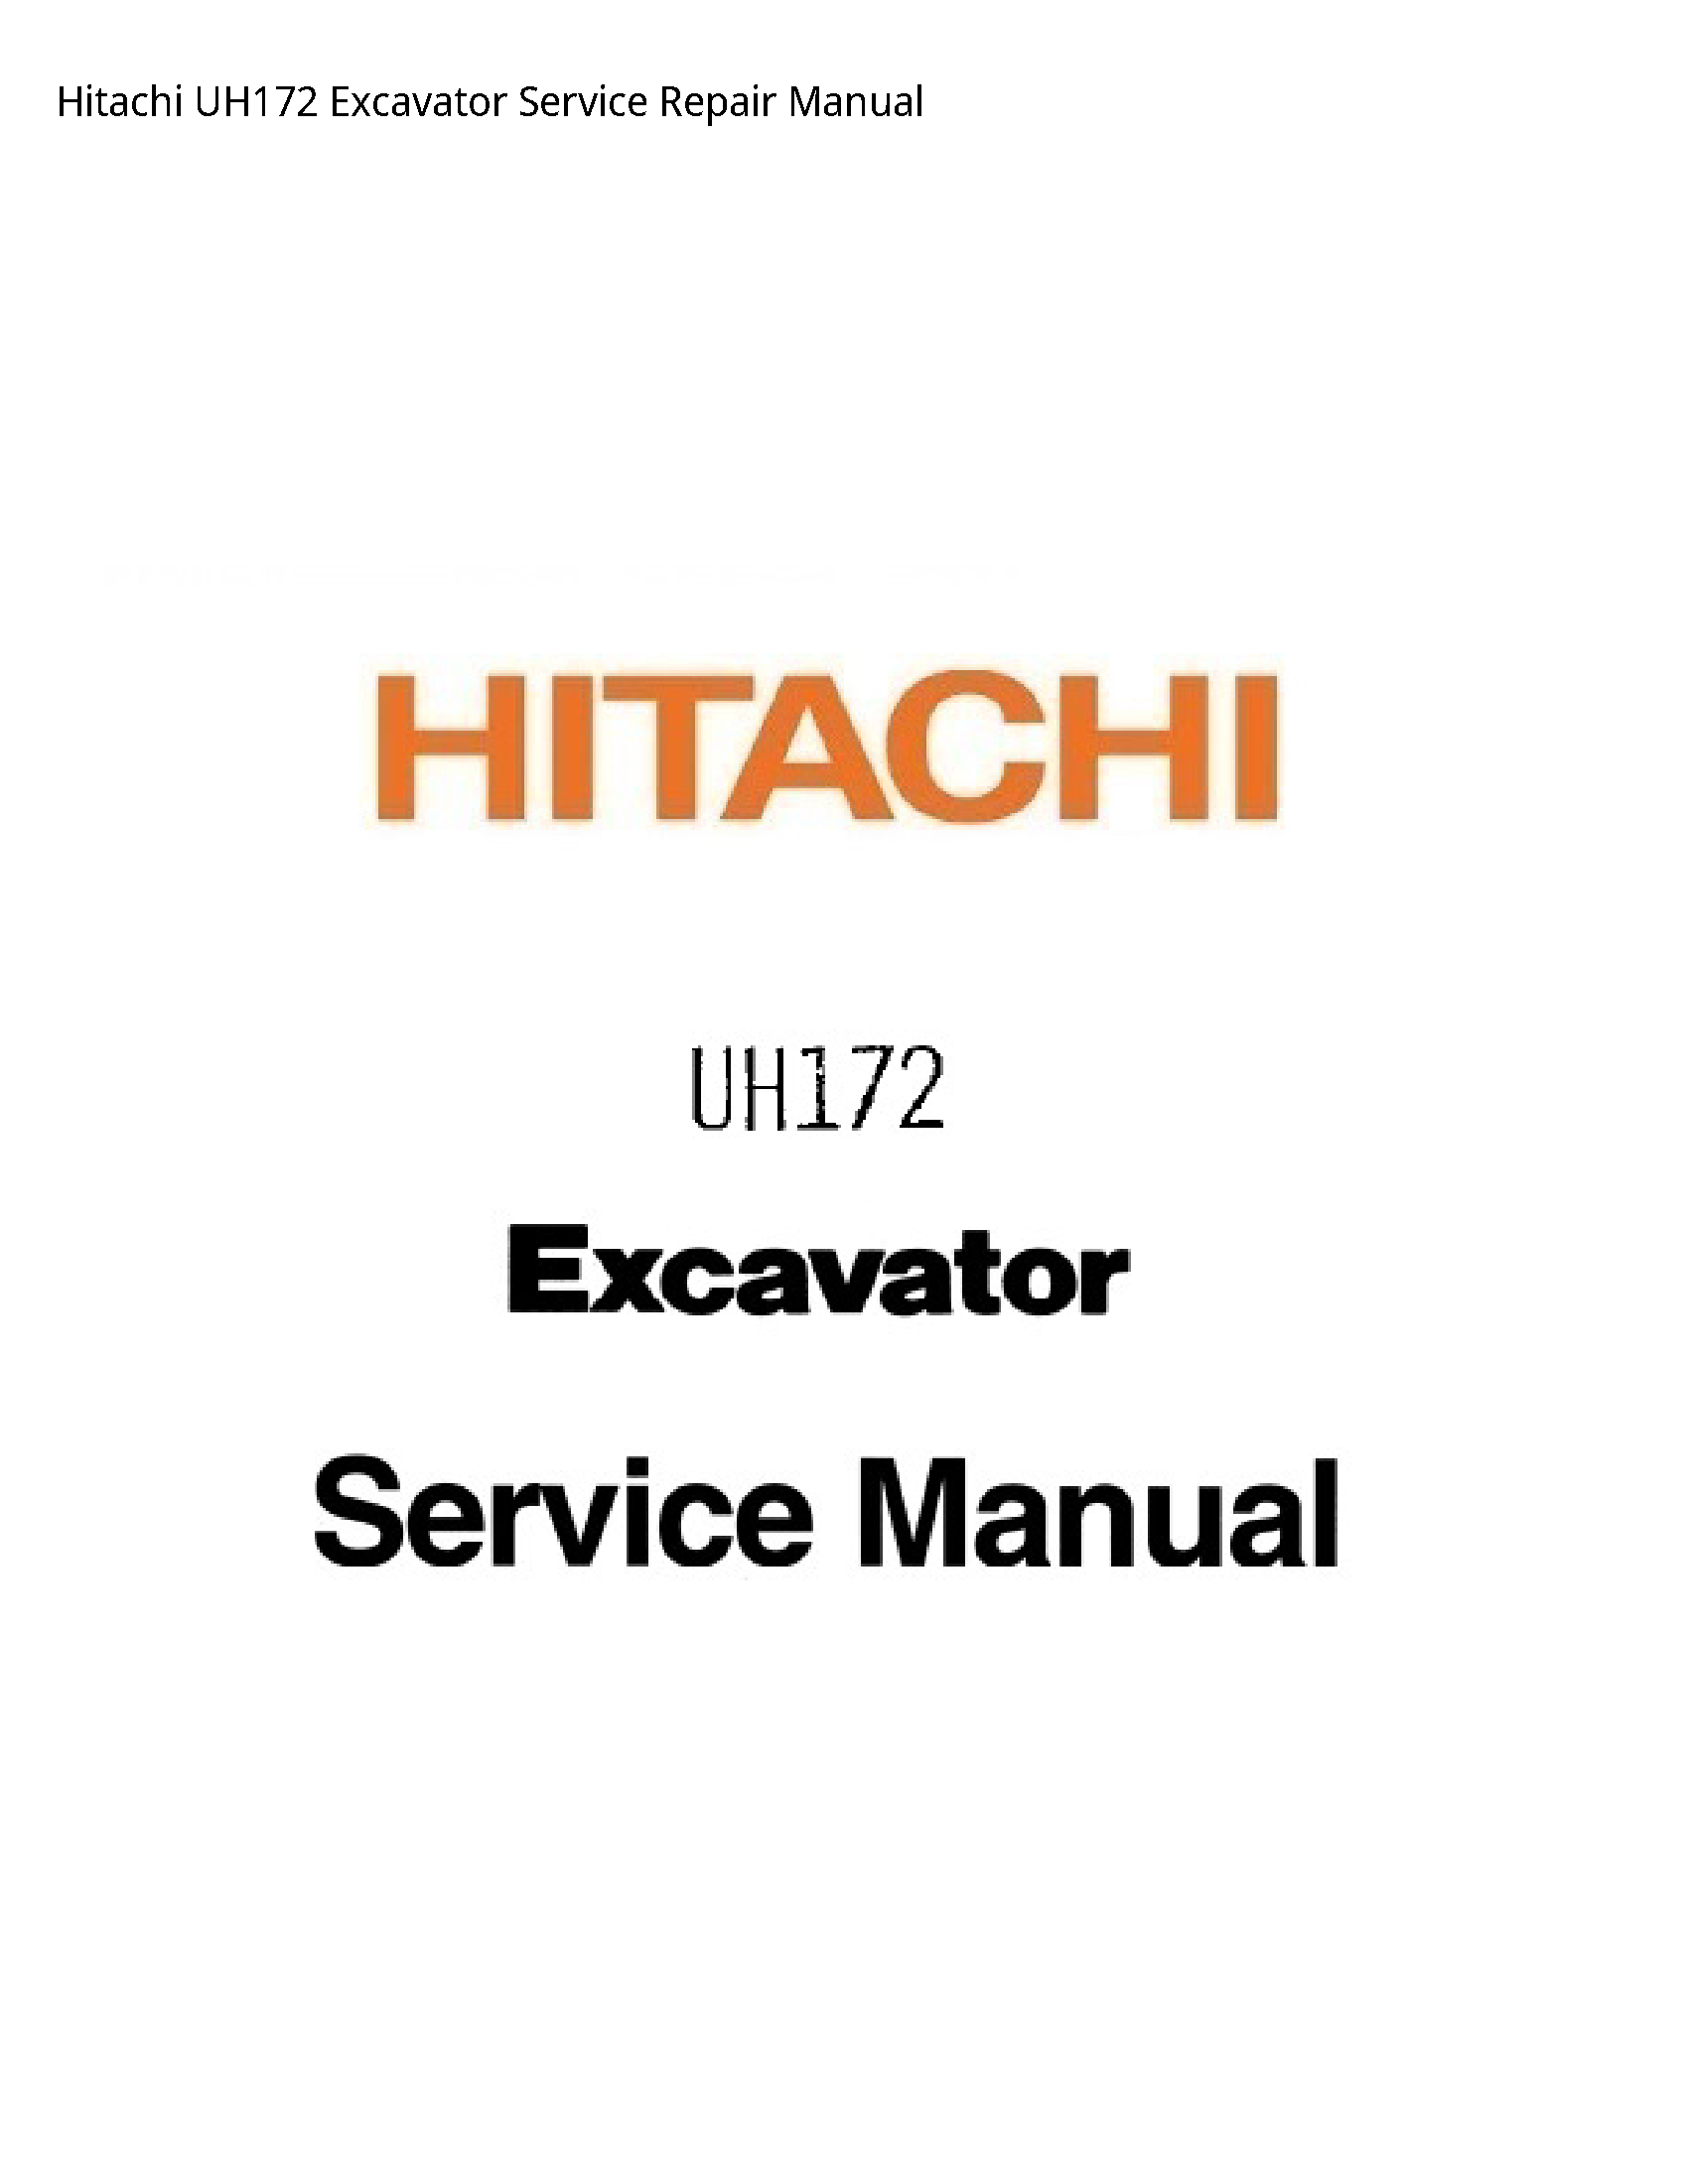 Hitachi UH172 Excavator manual